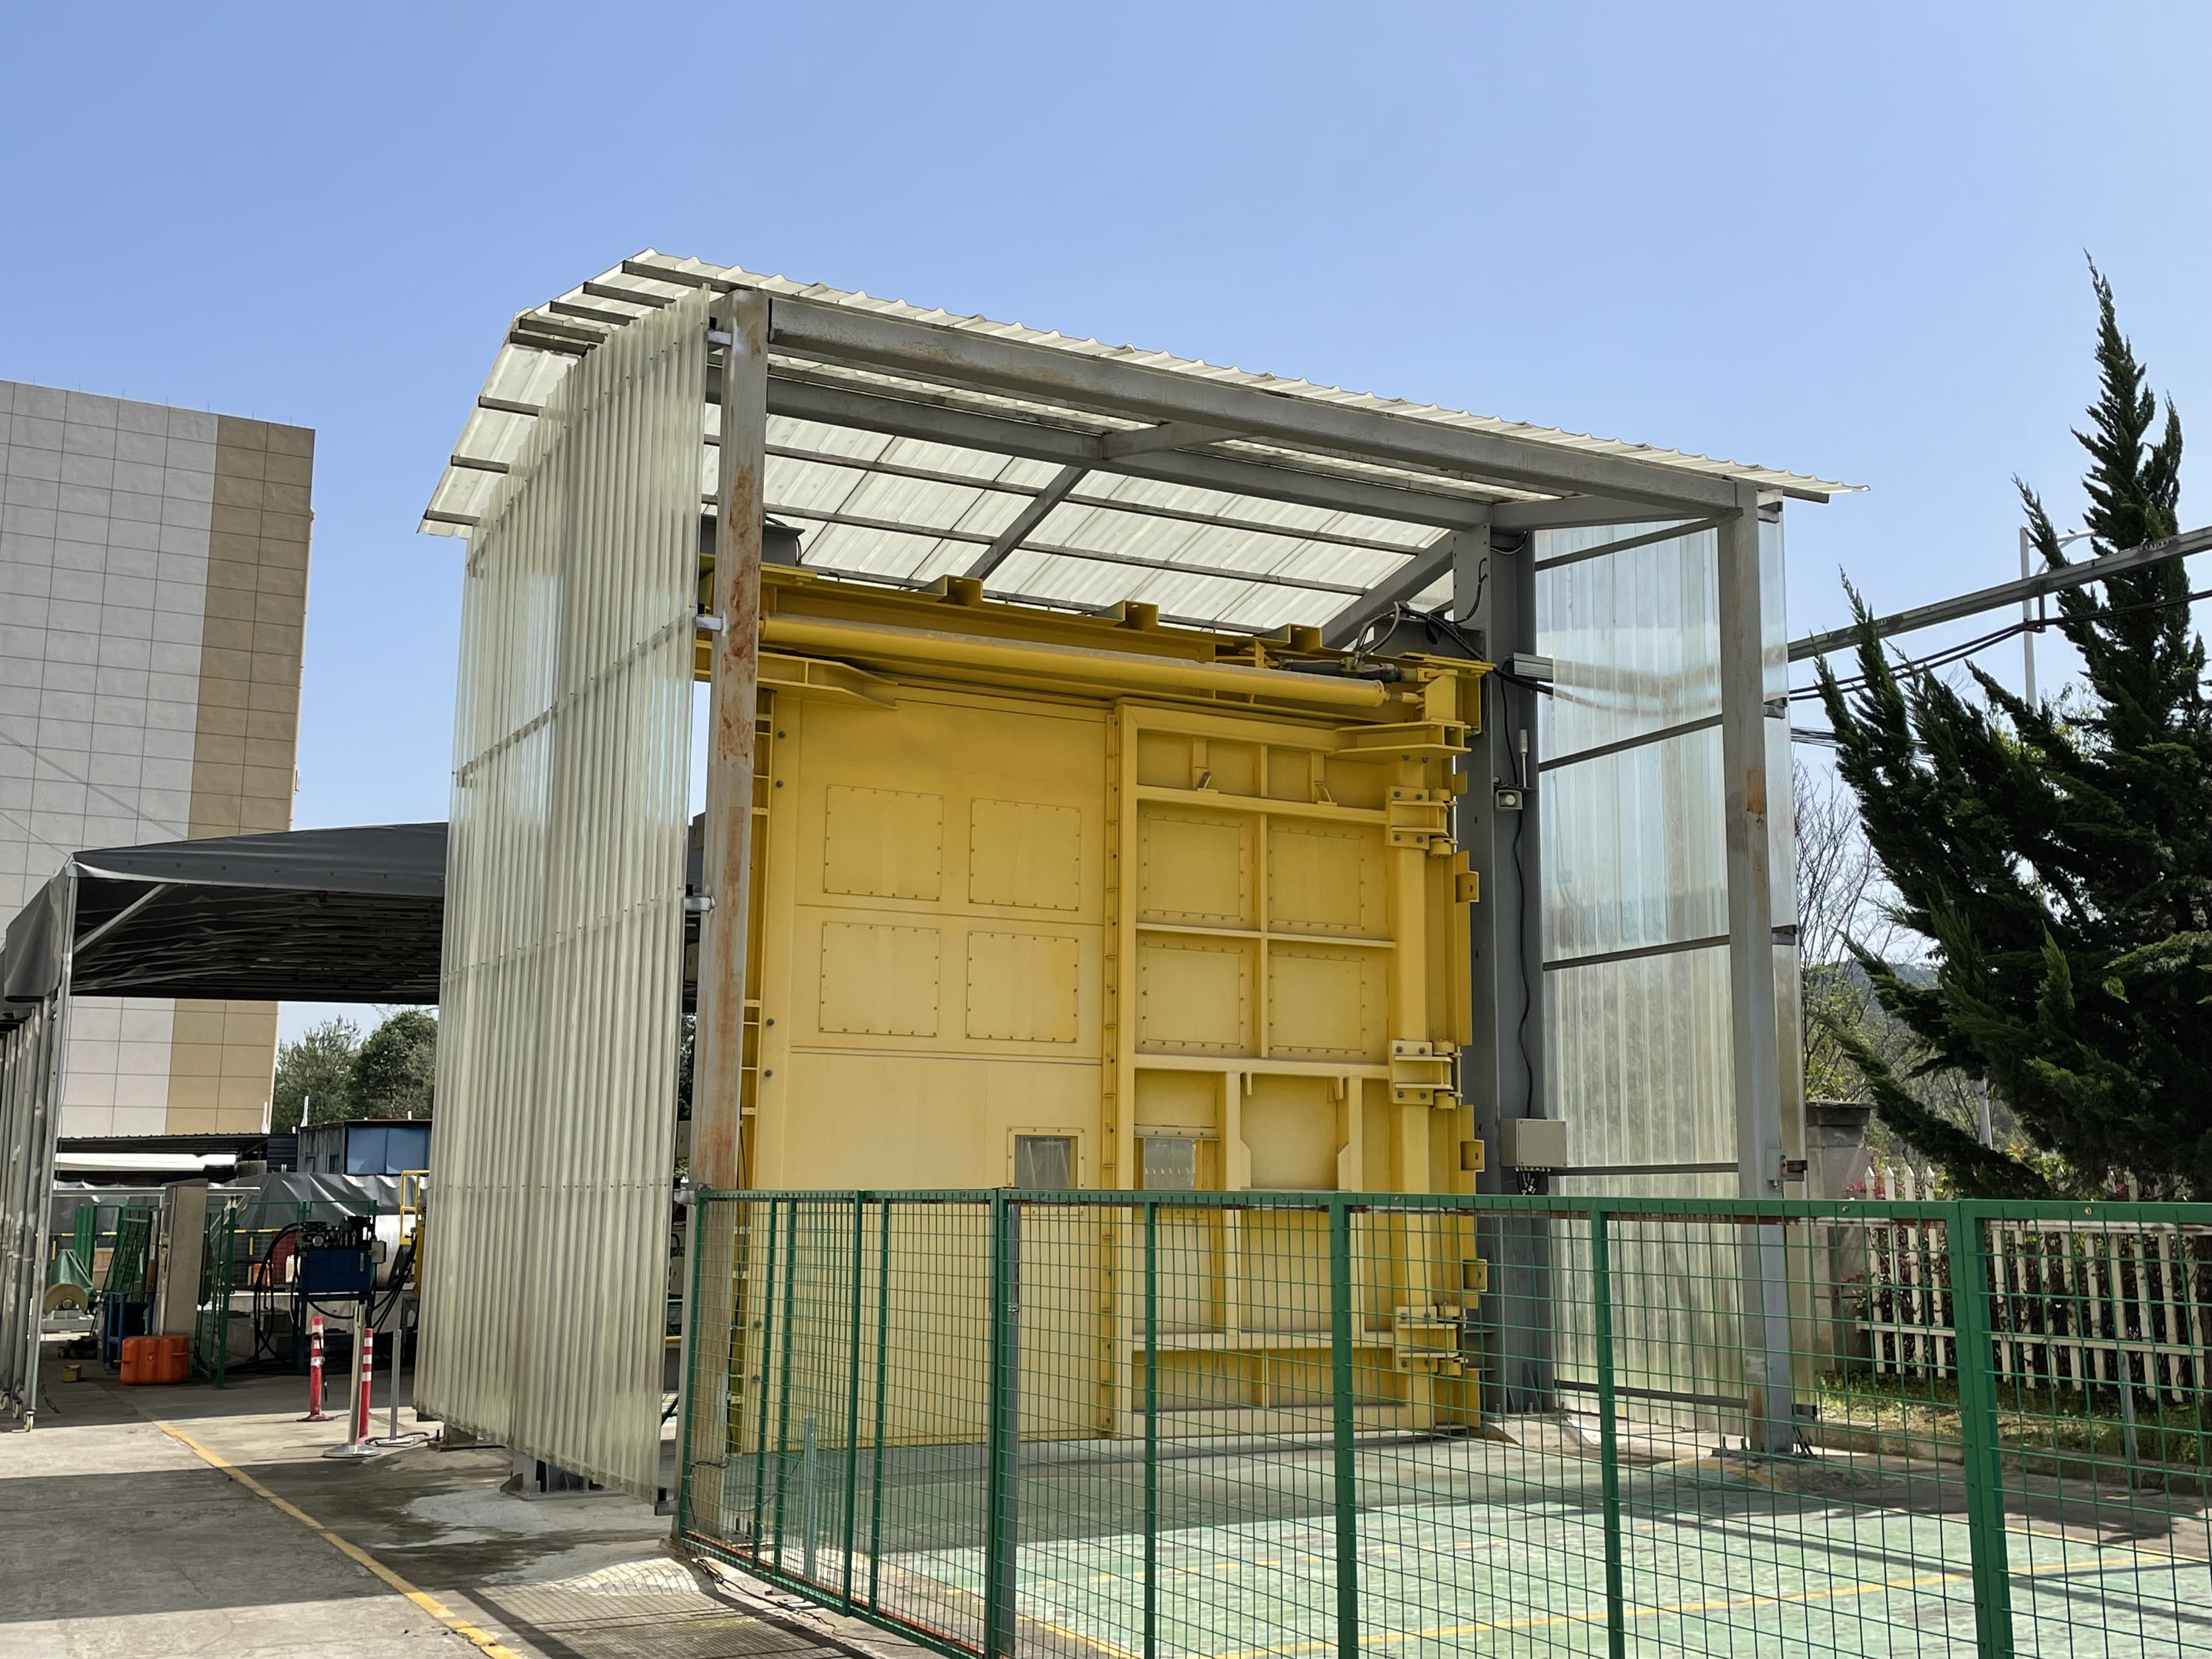 Sistema de esclusa de aire subterráneo con puerta de ventilación hidráulica, neumática, manual y eléctrica